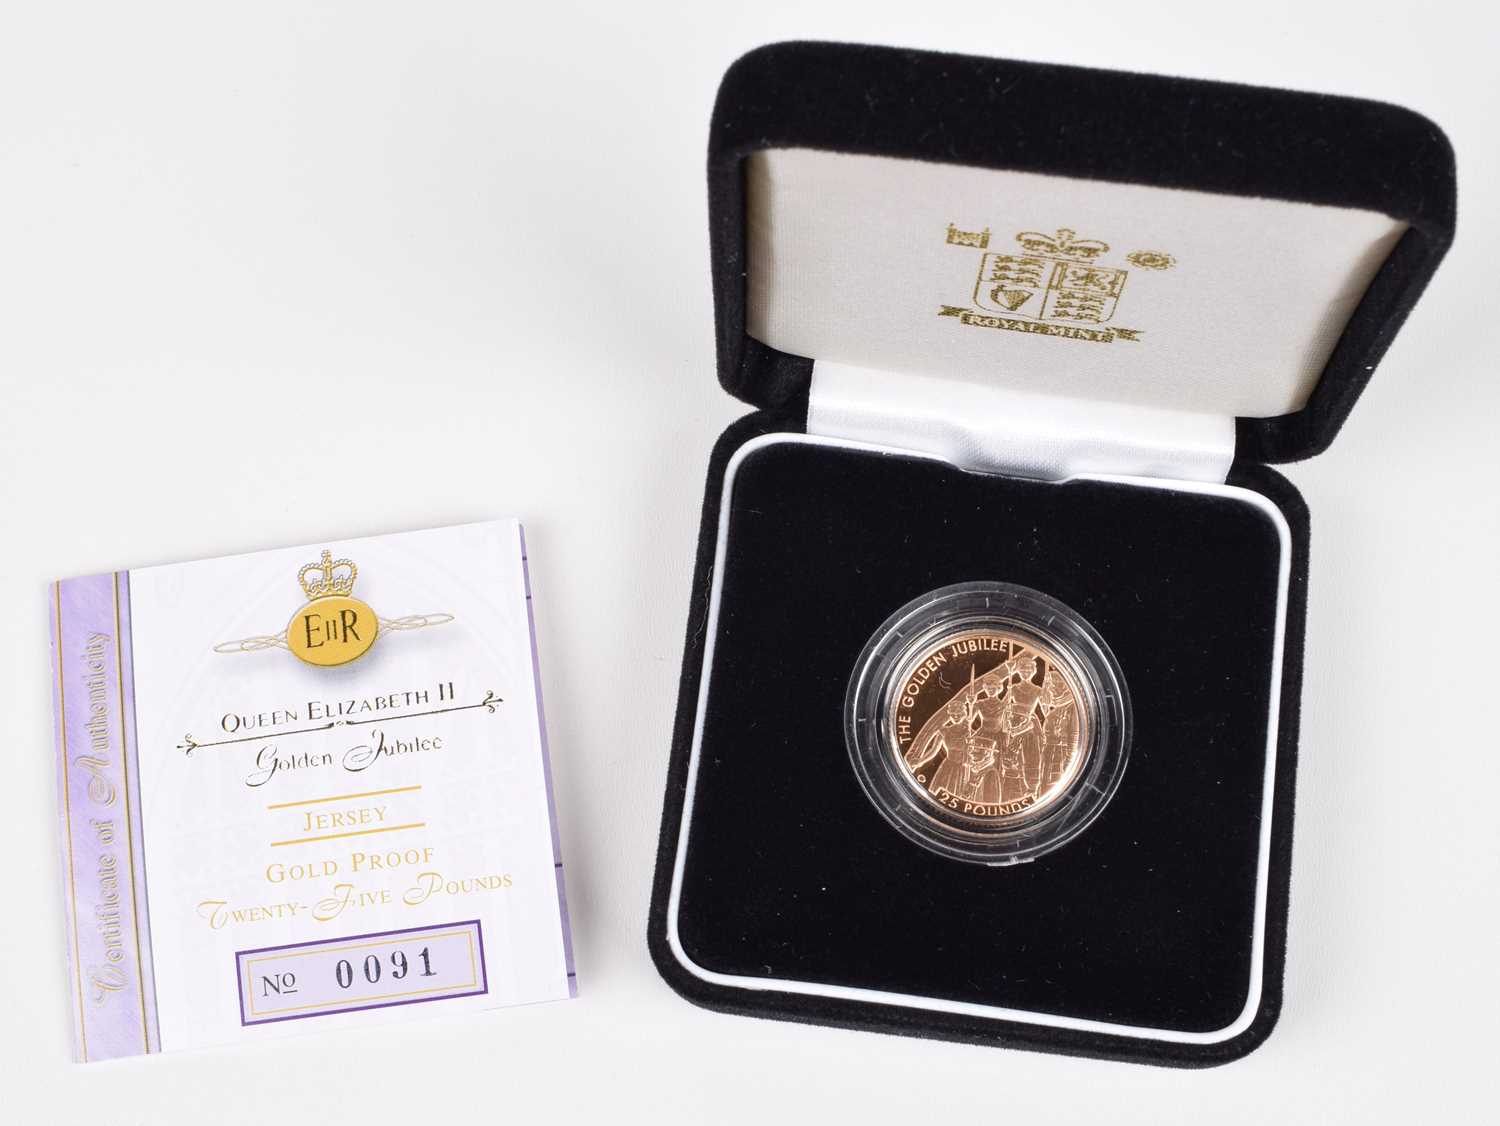 Lot Queen Elizabeth II, Royal Mint, Twenty-Five Pounds, Jersey Gold Proof Coin, 2002, Golden Jubilee.